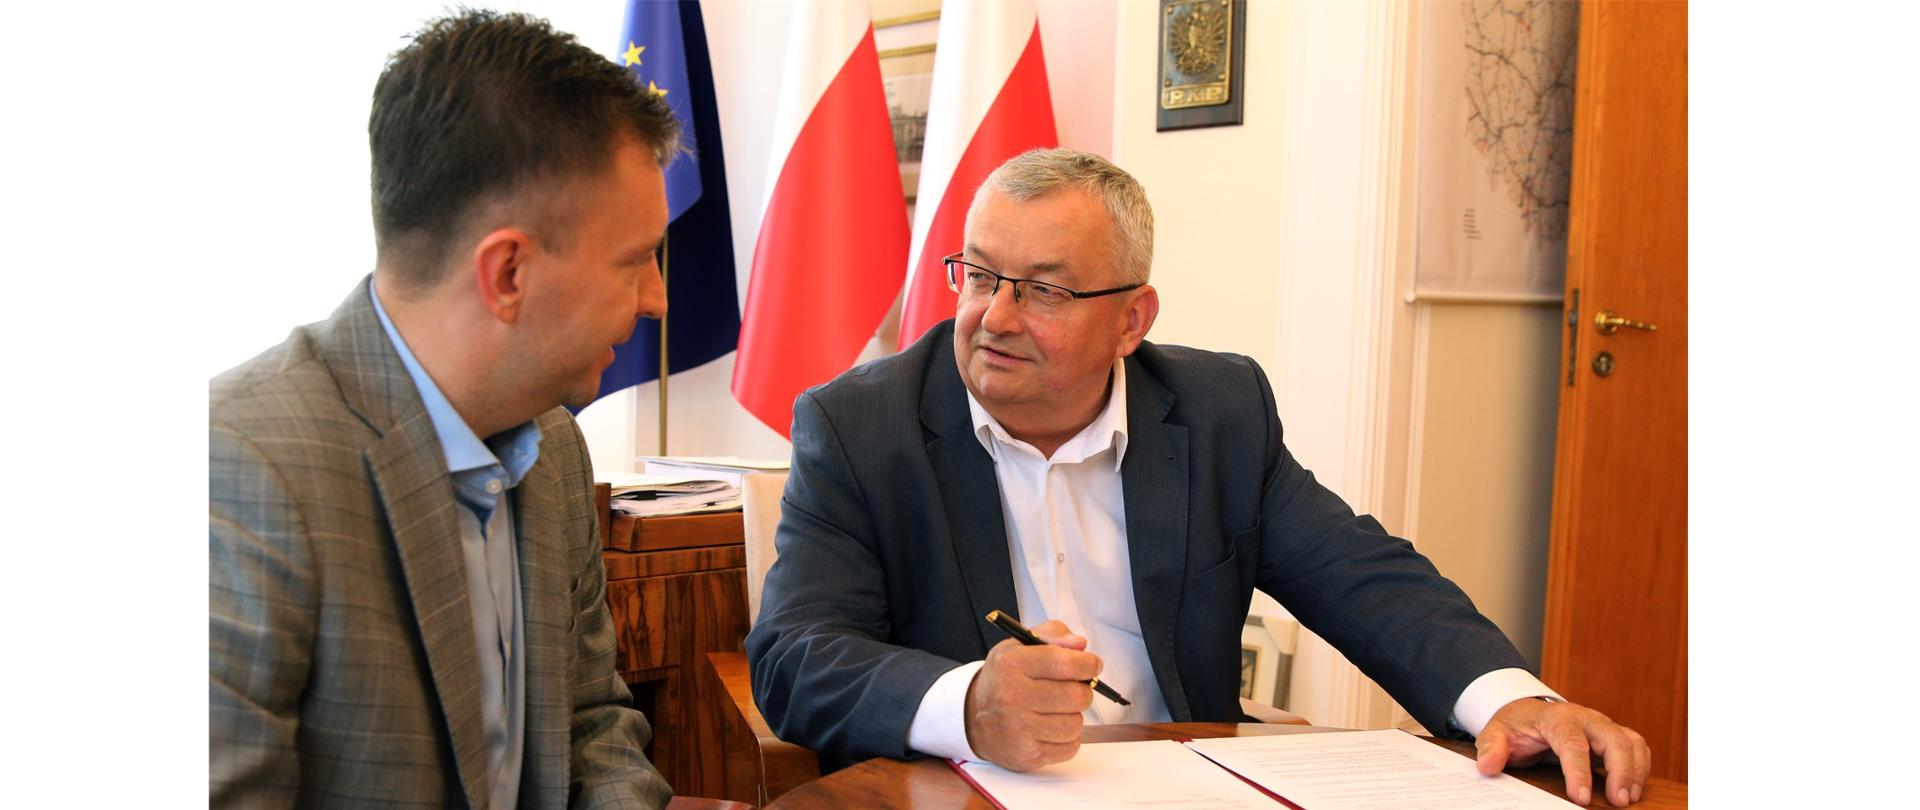 Inwestycje drogowe w Bydgoszczy otrzymały rządowe wsparcie